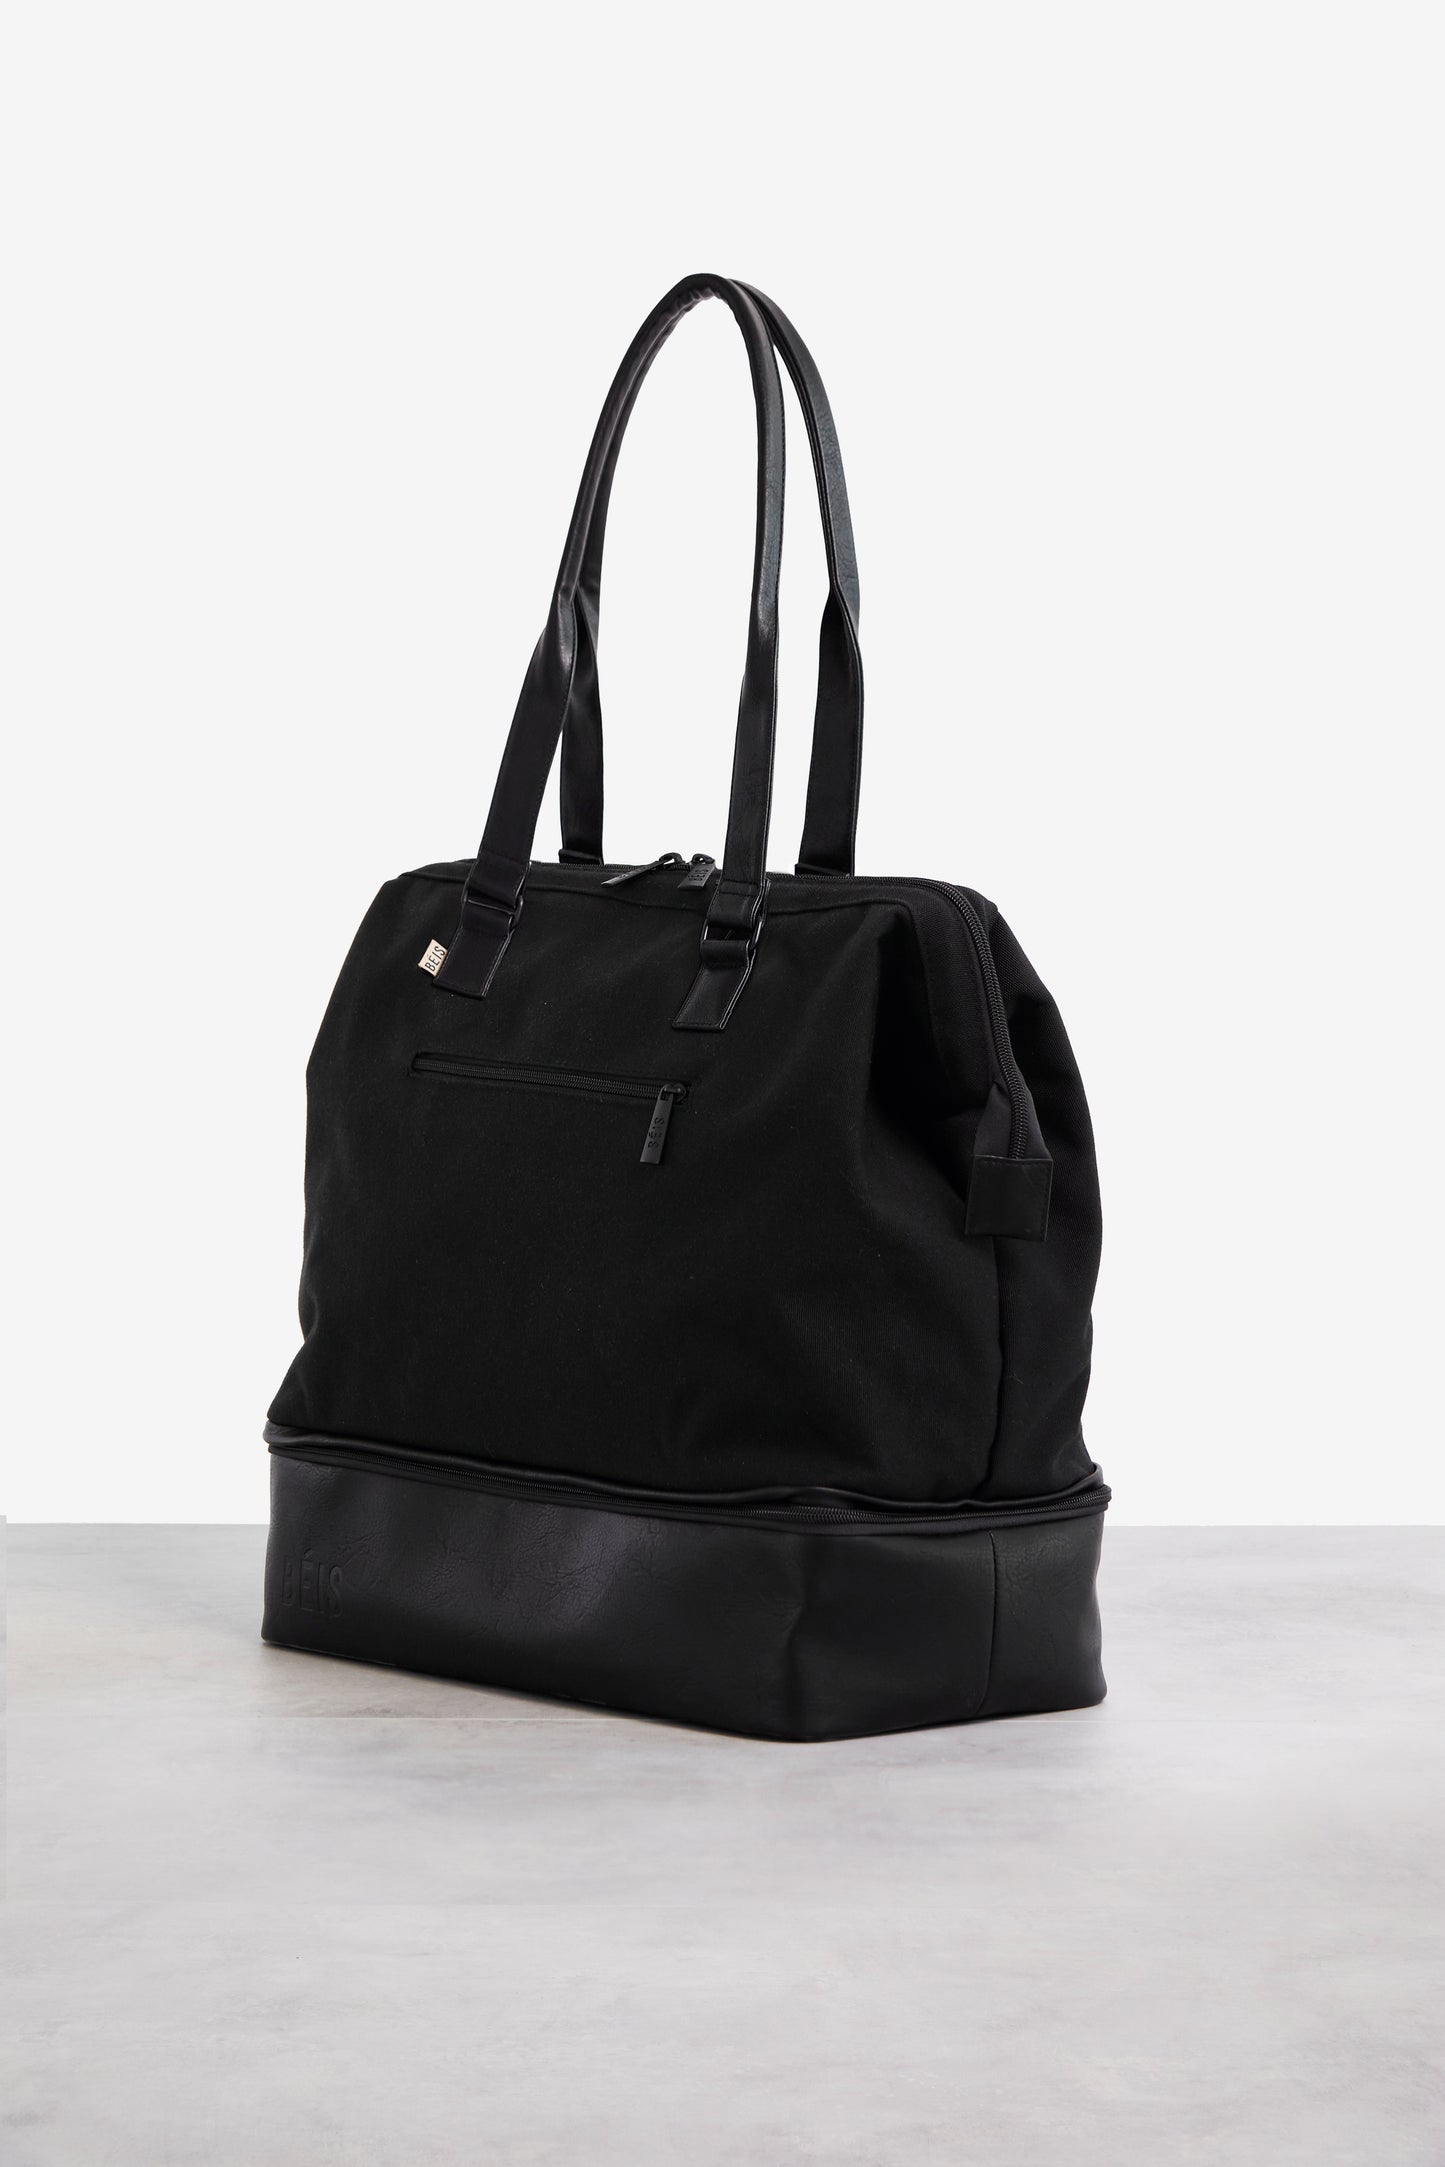 Black Weekender Bag